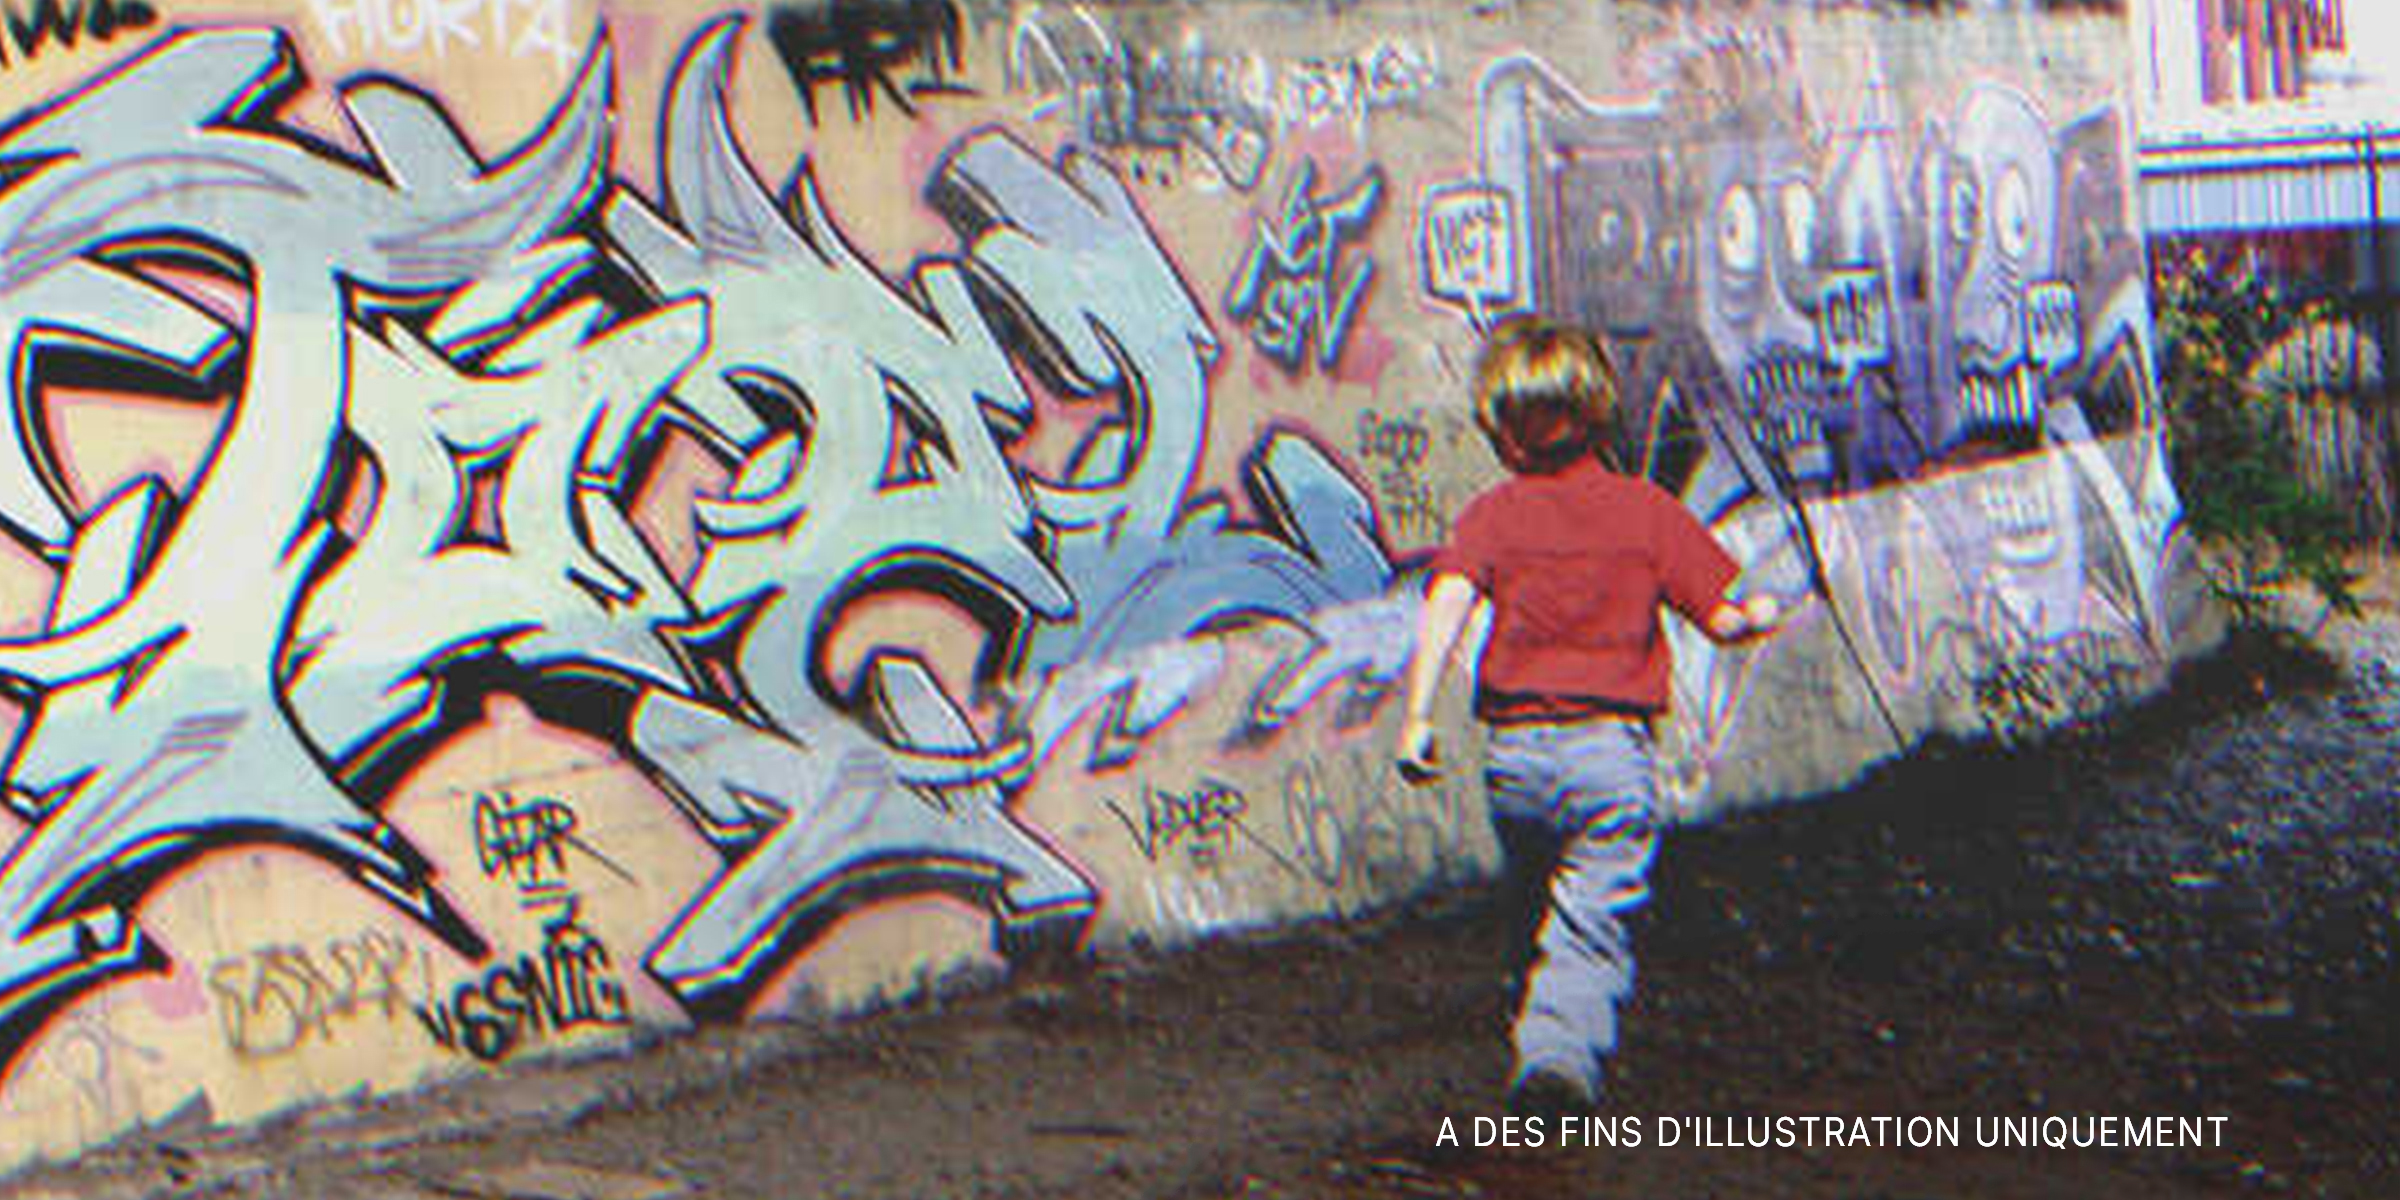 Un petit garçon | Source : Flickr / Laurie Avocado Flickr / frankjuarez